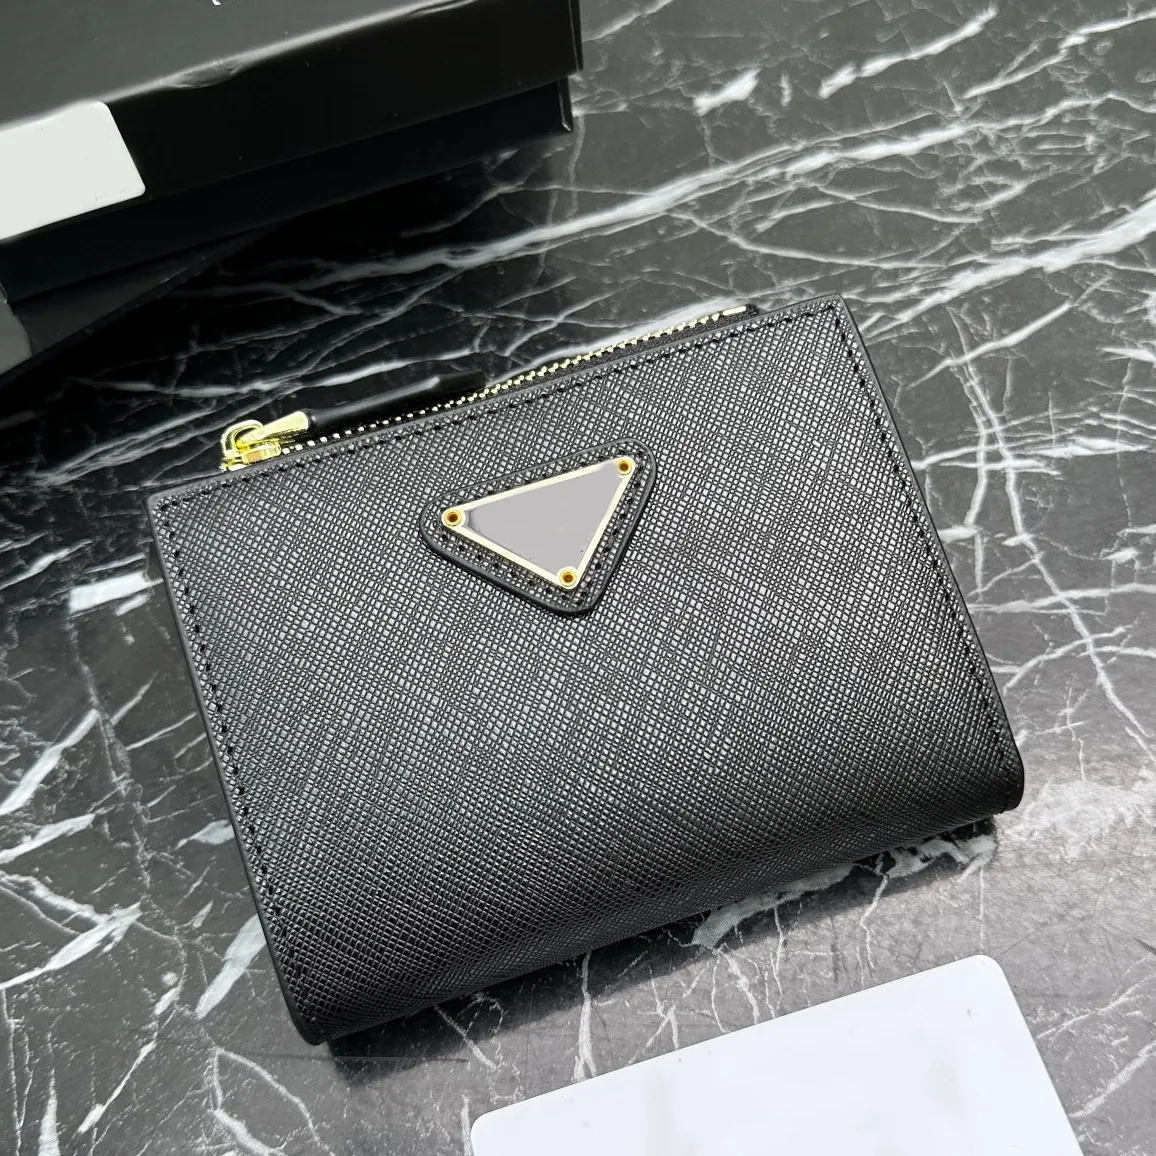 محفظة محفظة حاملي بطاقة محفظة مصمم عملة عملة قصيرة محافظ صغيرة عالية الجودة حقيبة عمل جلدية أصلية حقيبة يد